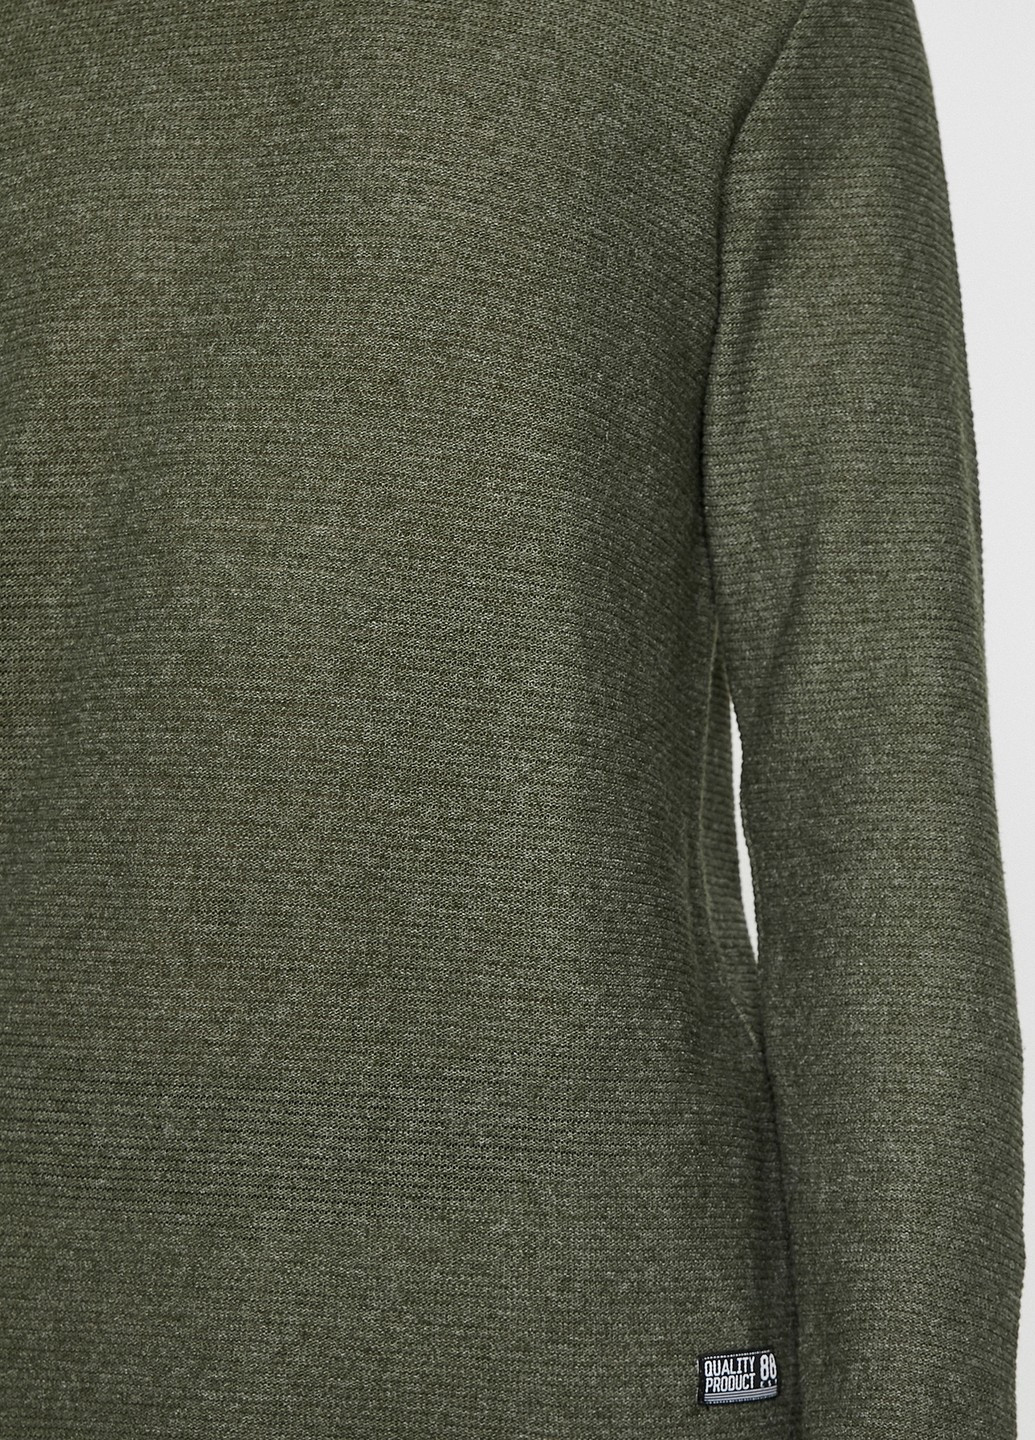 Темно-зеленый демисезонный свитер джемпер KOTON